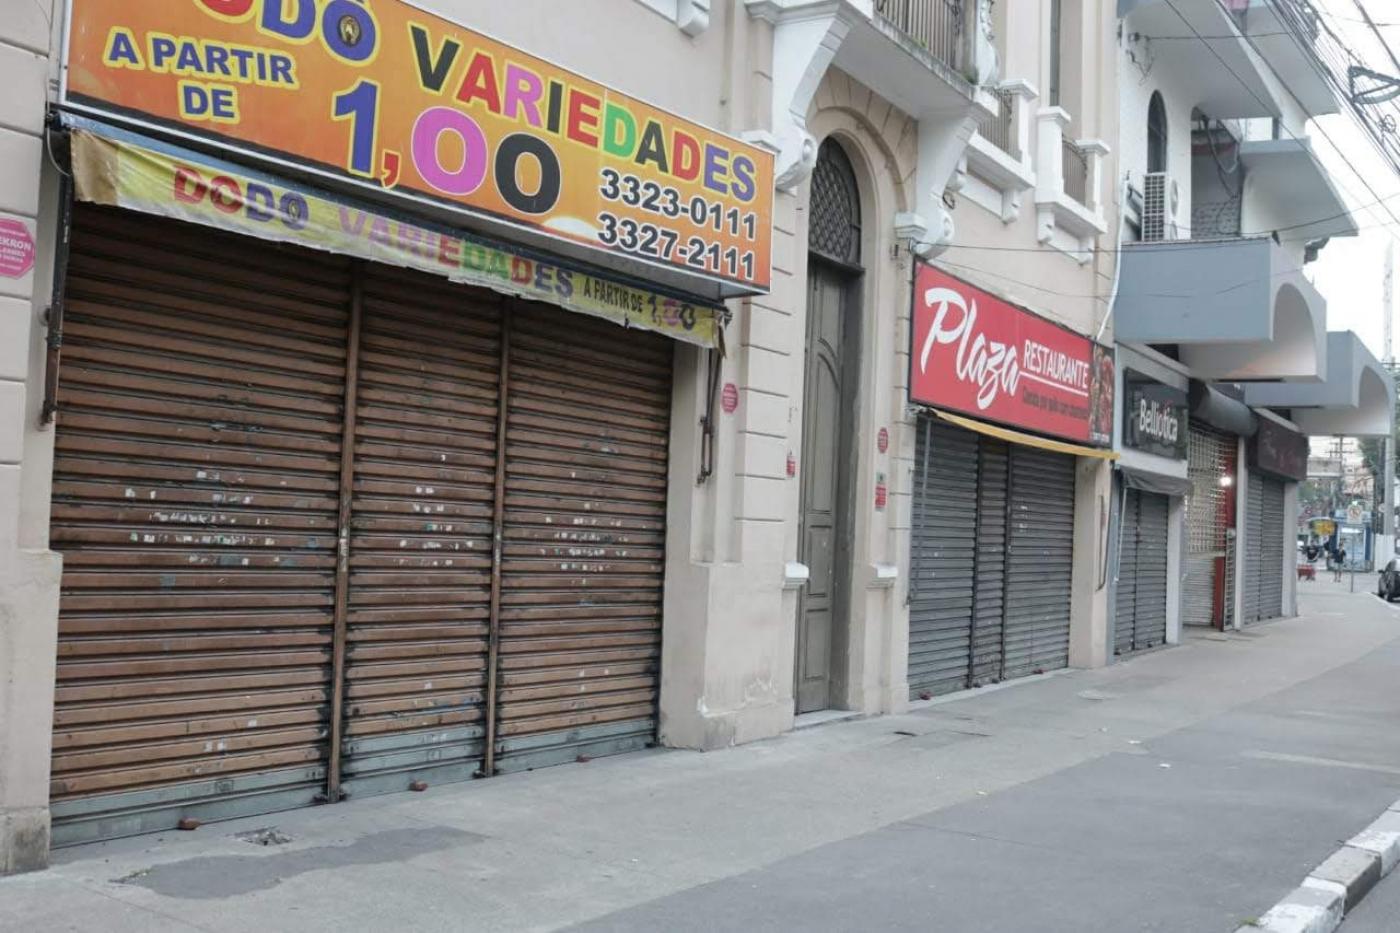 Várias lojas de rua com portas fechadas. Rua está vazia. #Paratodosverem